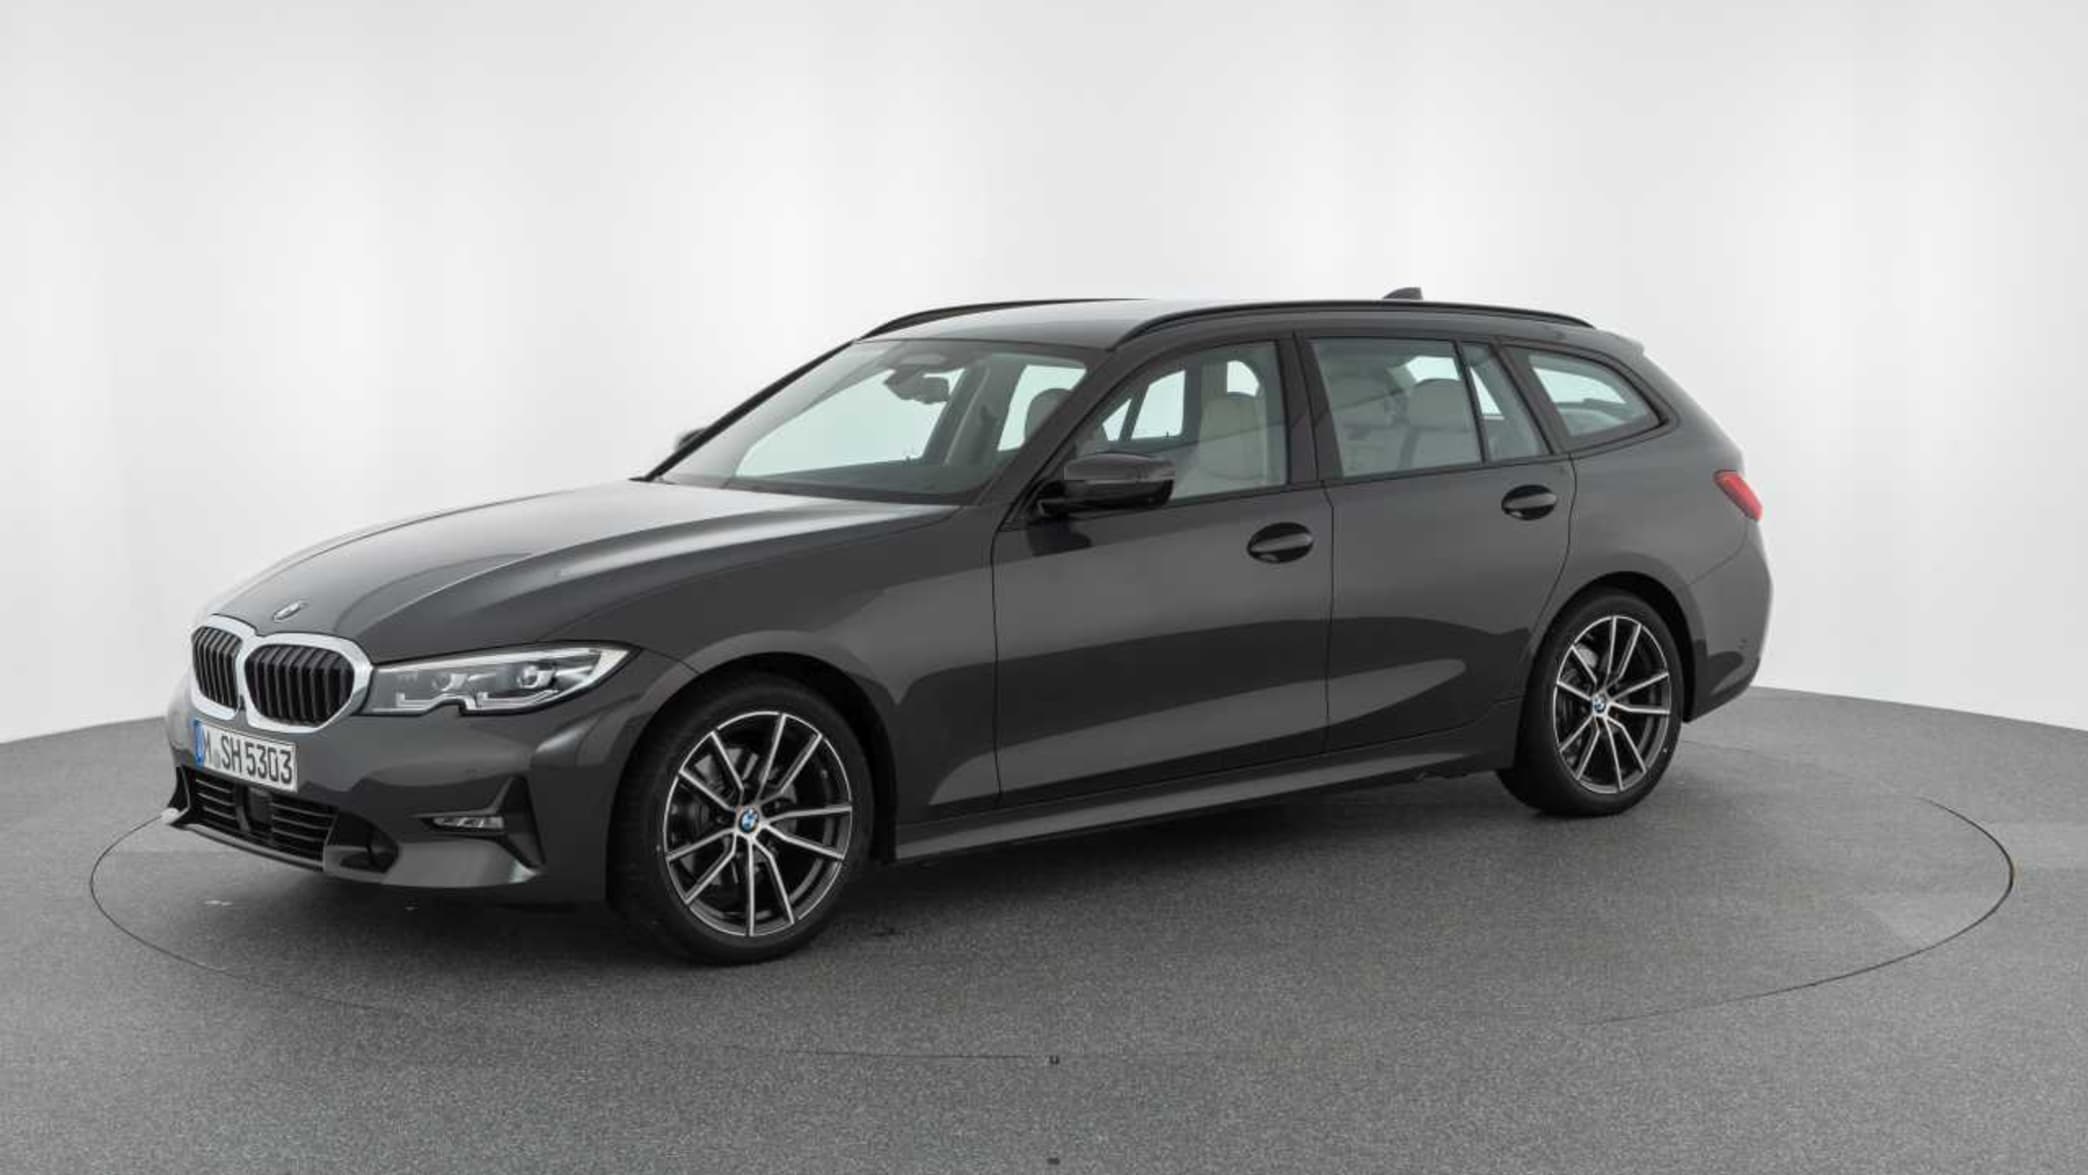 BMW 3er Touring M Automobile (G21): Modelle, technische Daten